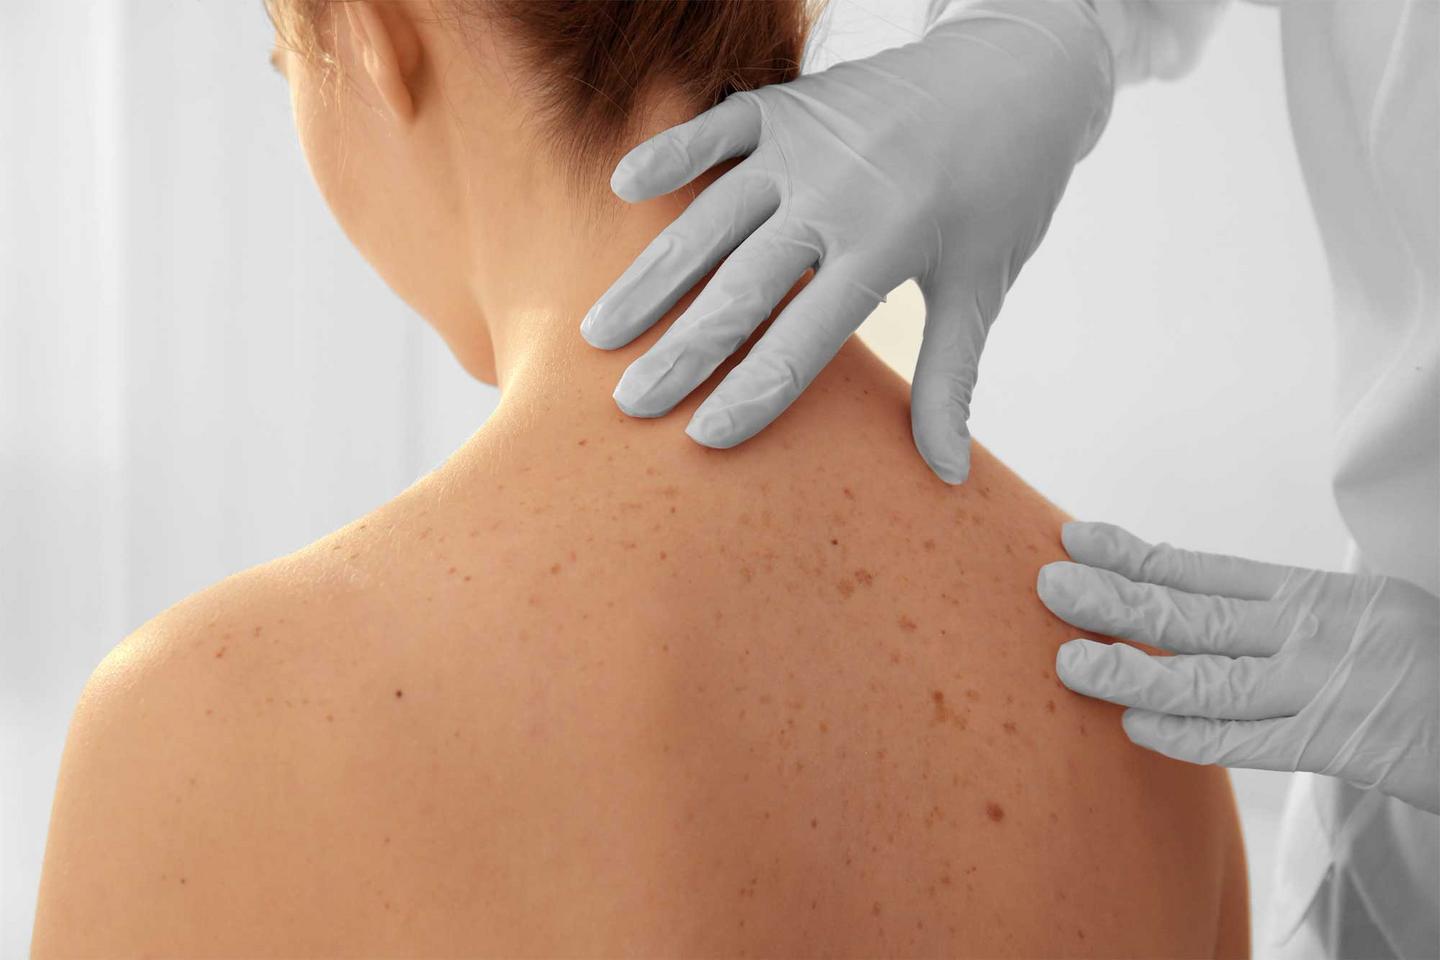 Hautärztin untersucht den Rücken einer Patientin zur Früherkennung von Hautkrebs